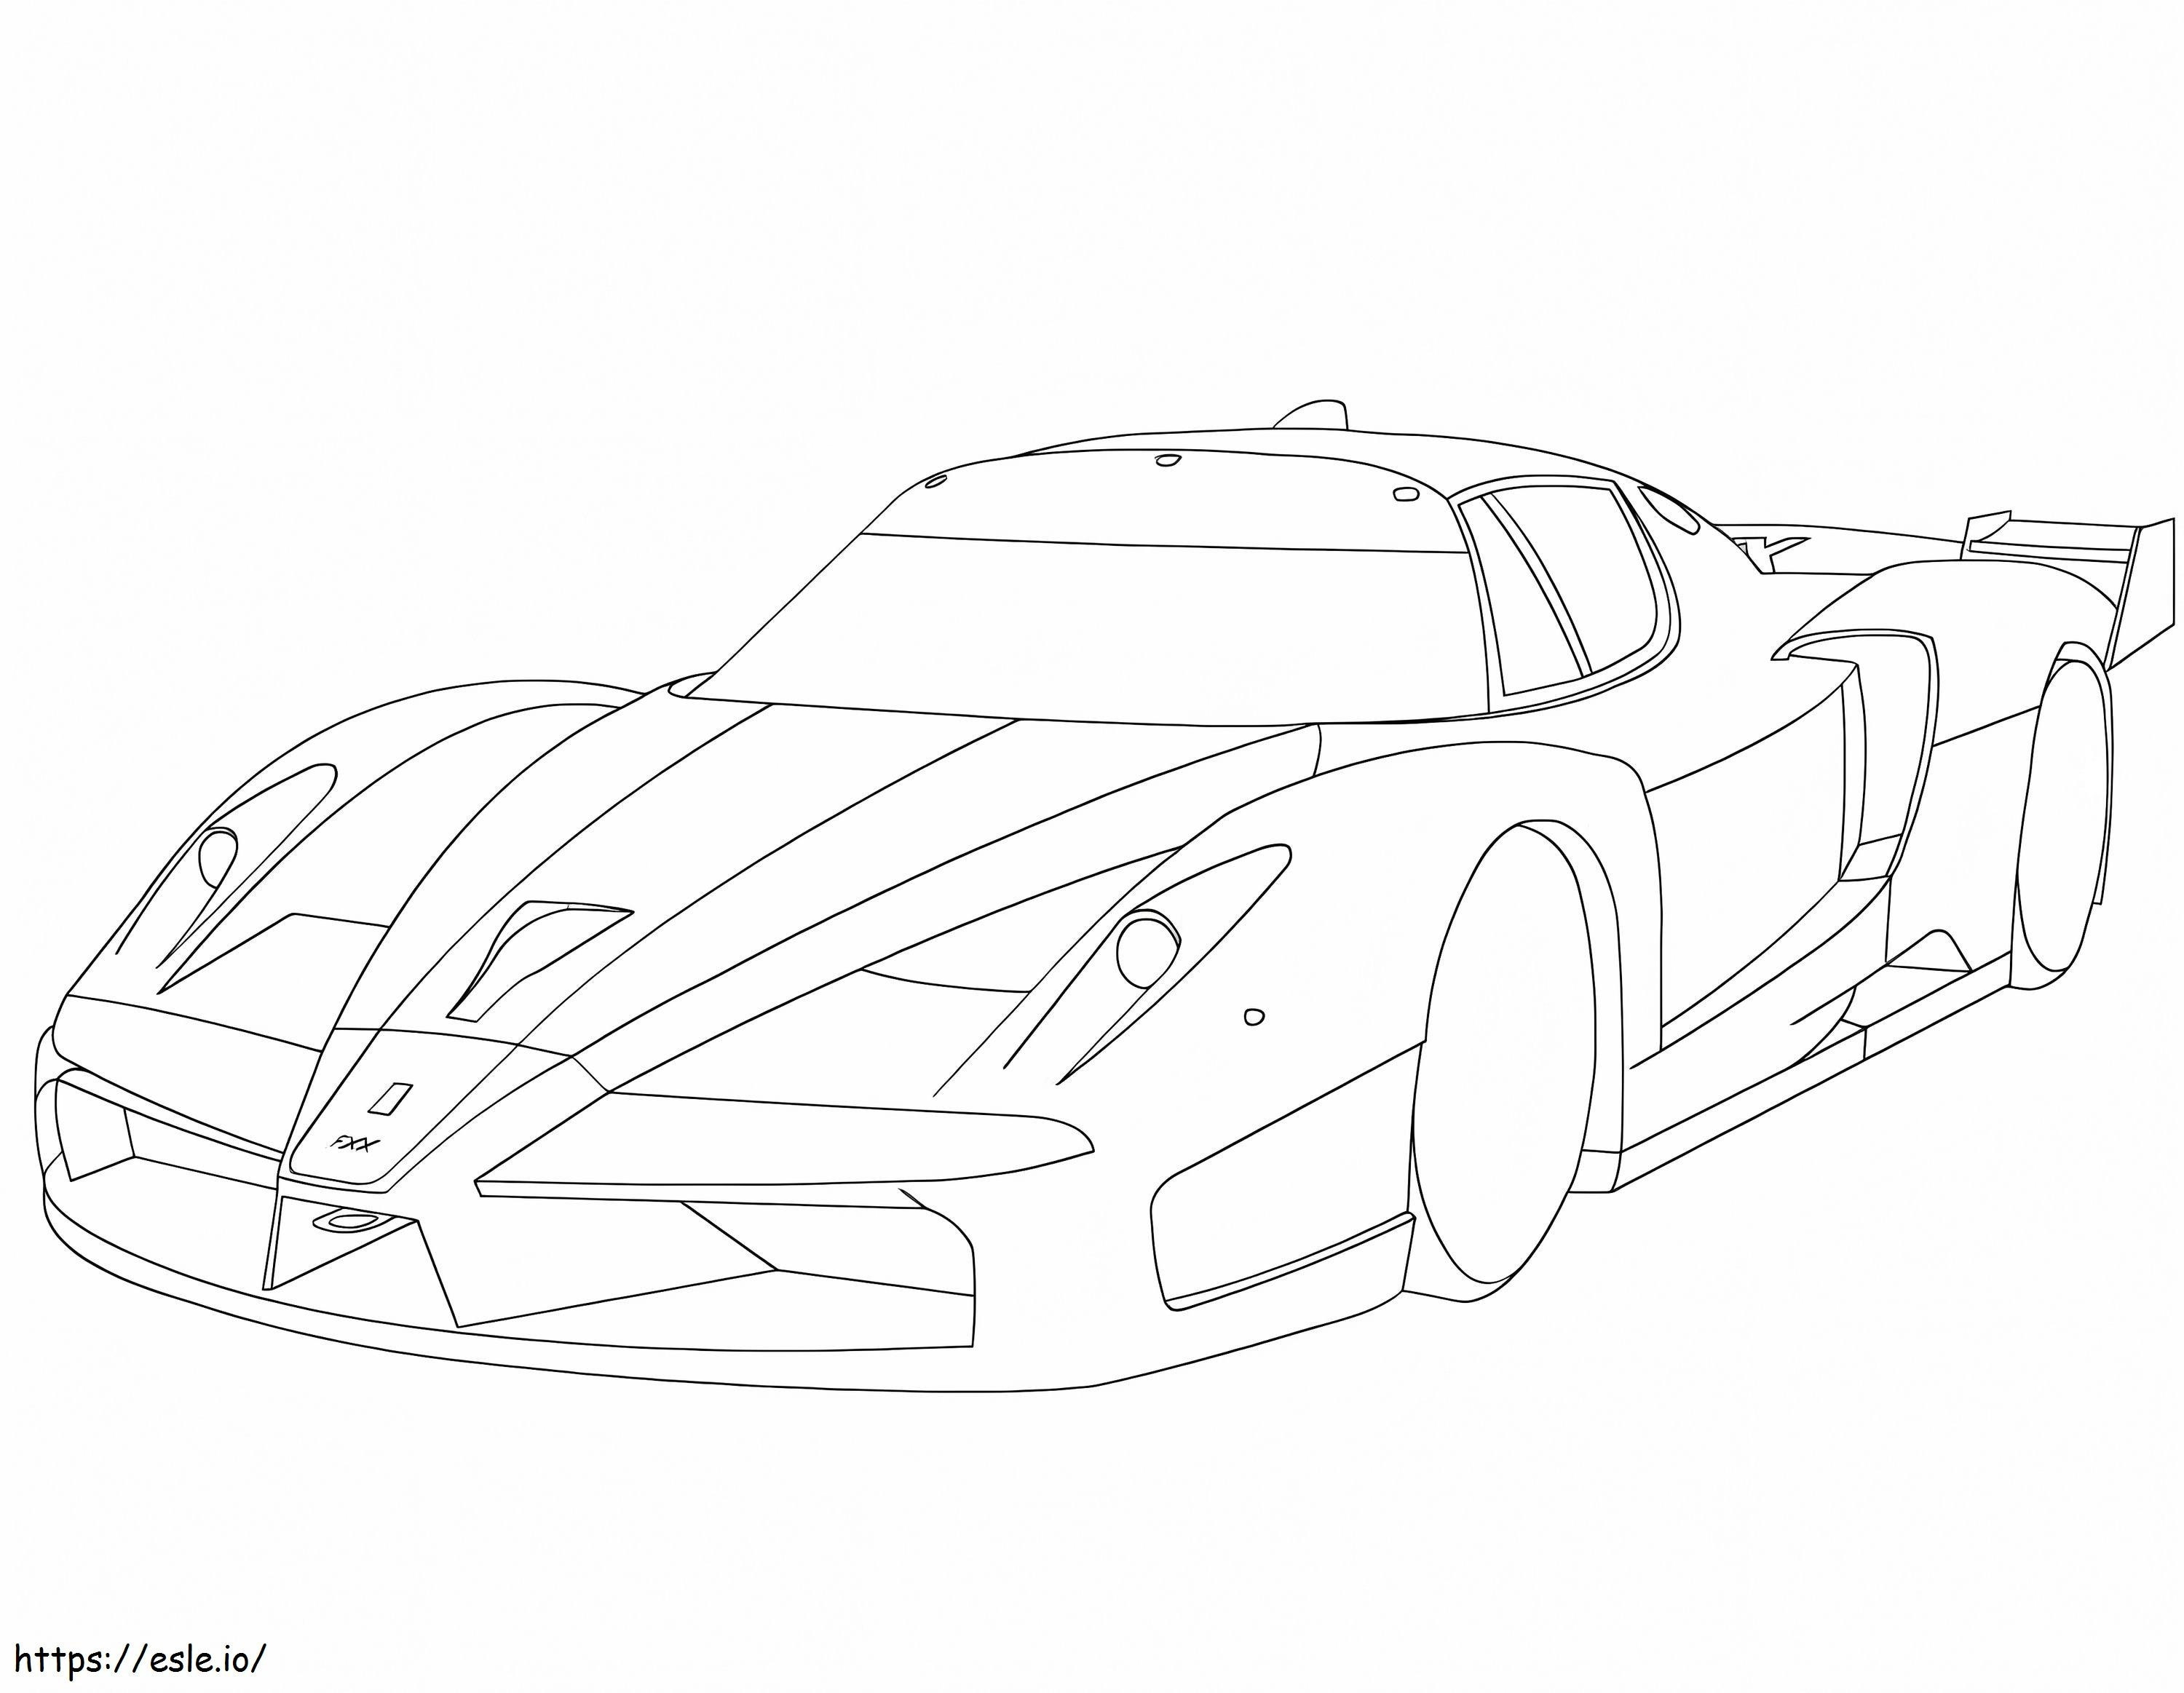 Ferrari Fxx coloring page